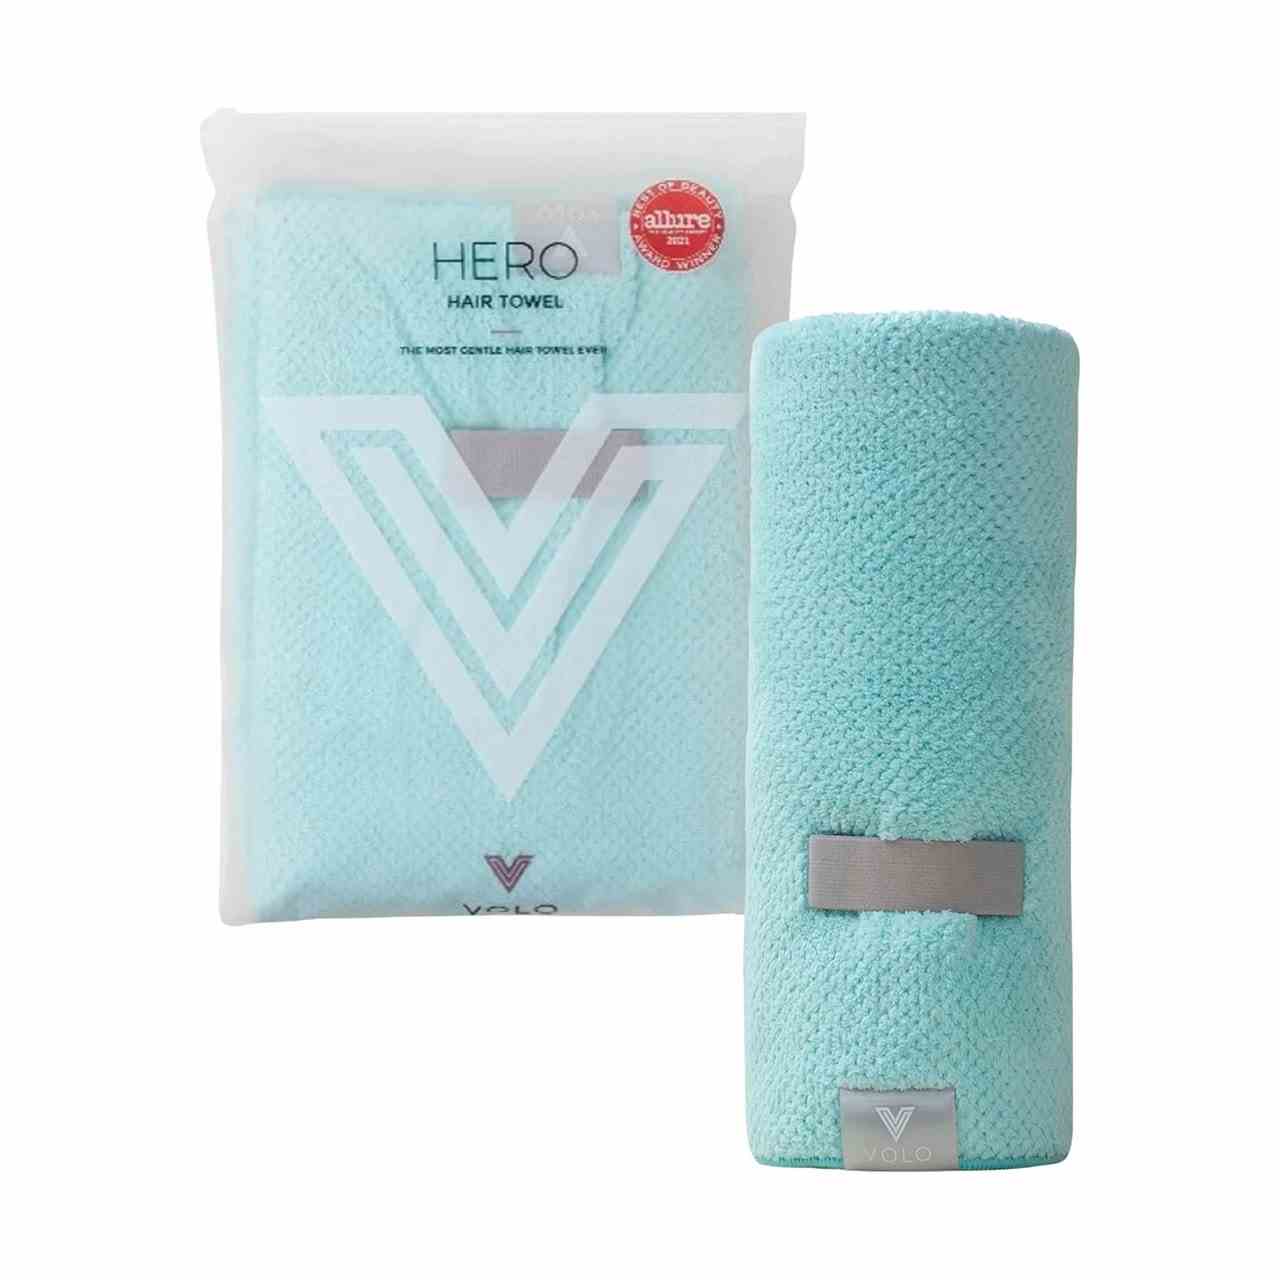 Volo Microfiber Hair Towel mint aufgerolltes Handtuch und Plastikbeutel auf weißem Hintergrund